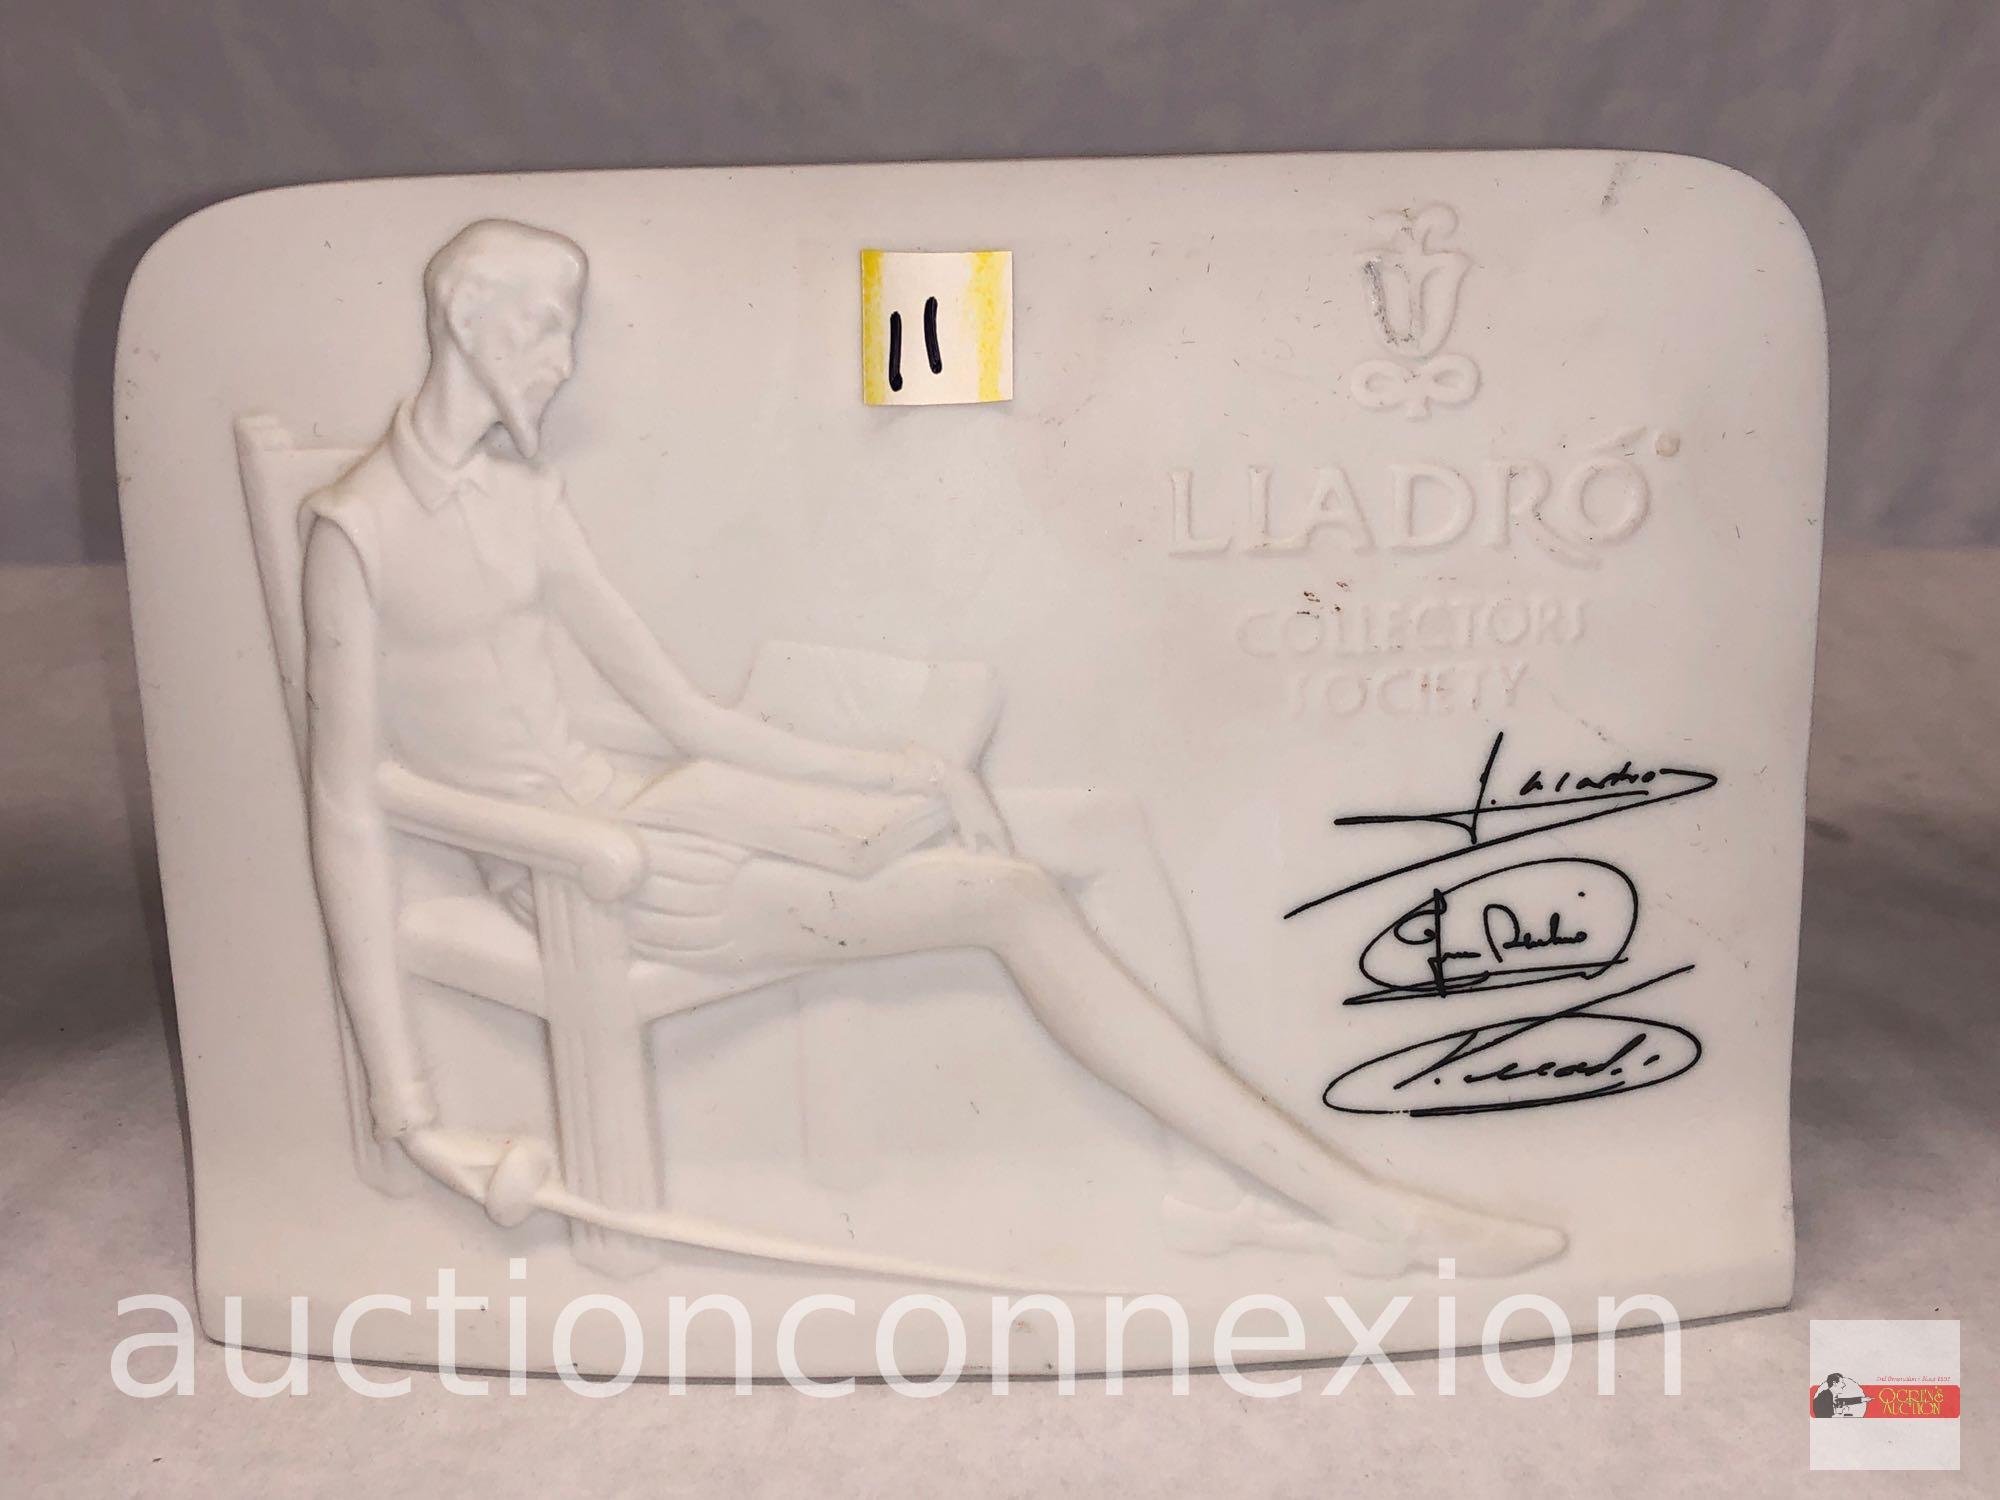 Figurine - Lladro Collectors Society, Don Quixote, signature series sea shell